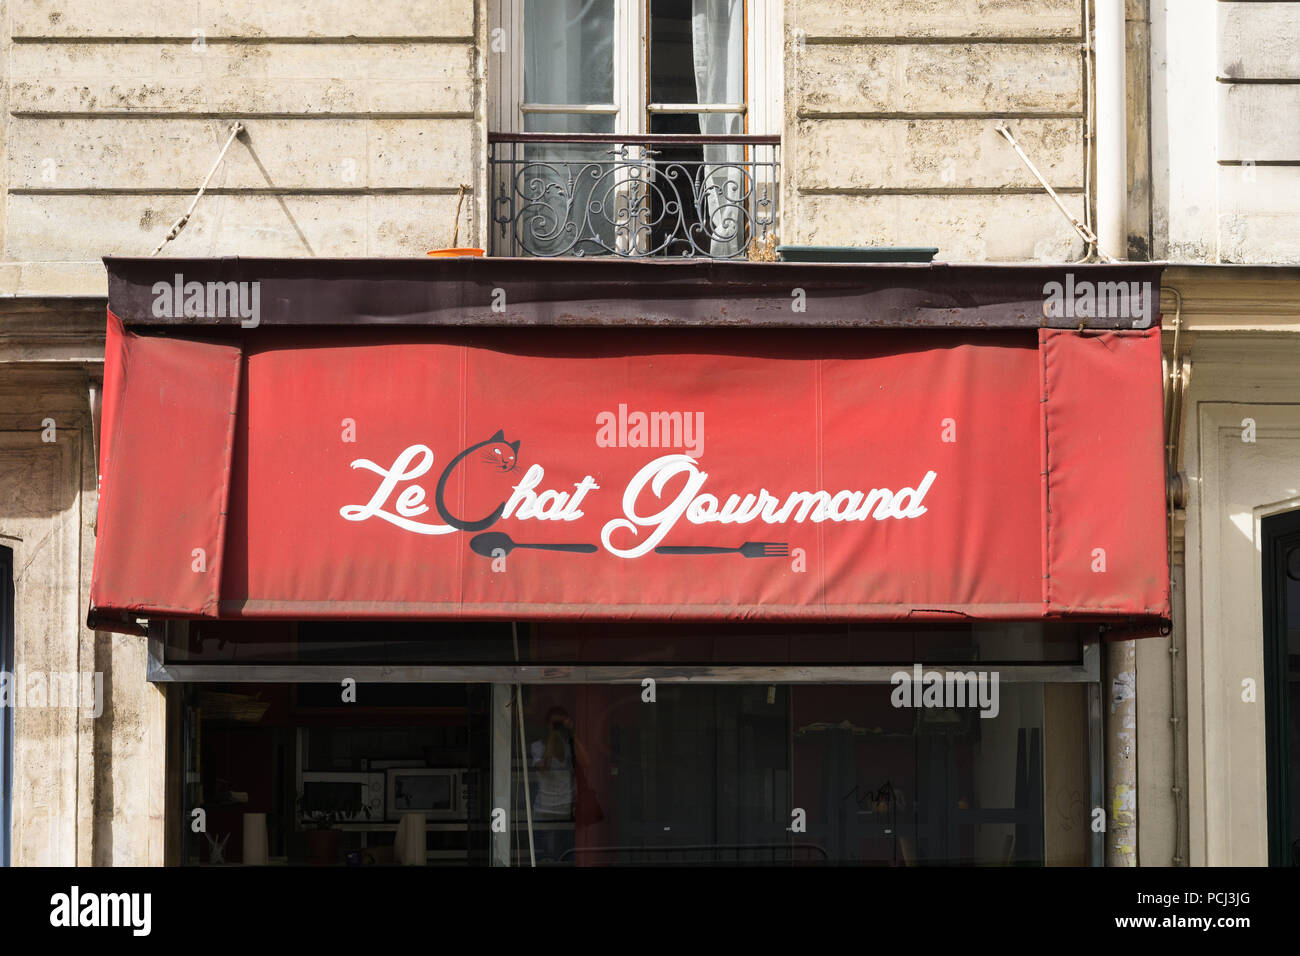 Paris 11. arrondissement - Markise eines Pariser Restaurant Le Chat Gourmand im 11. arrondissement. Frankreich, Europa. Stockfoto